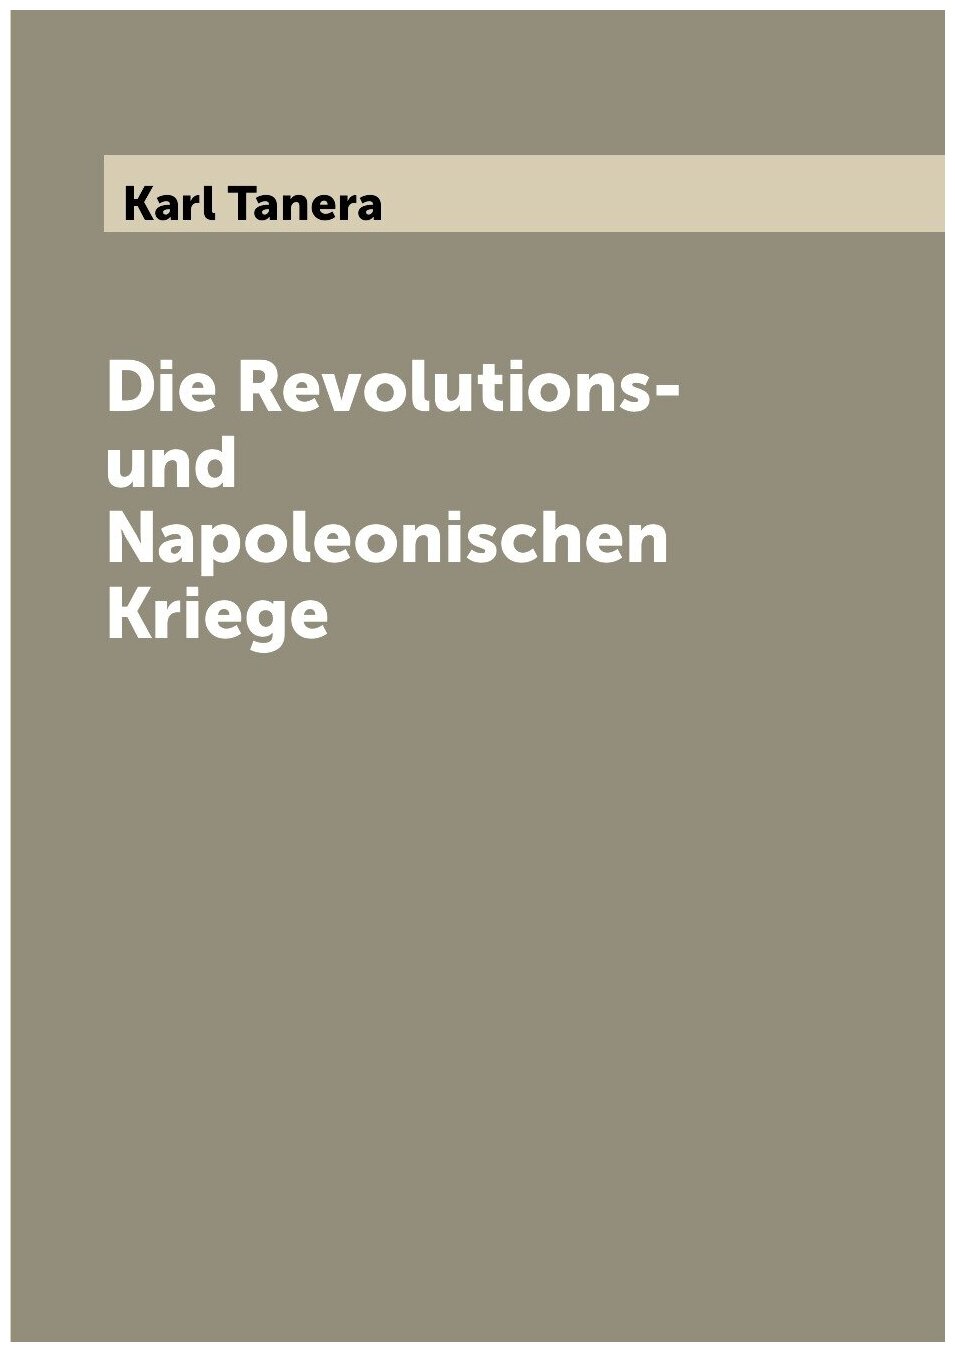 Die Revolutions- und Napoleonischen Kriege